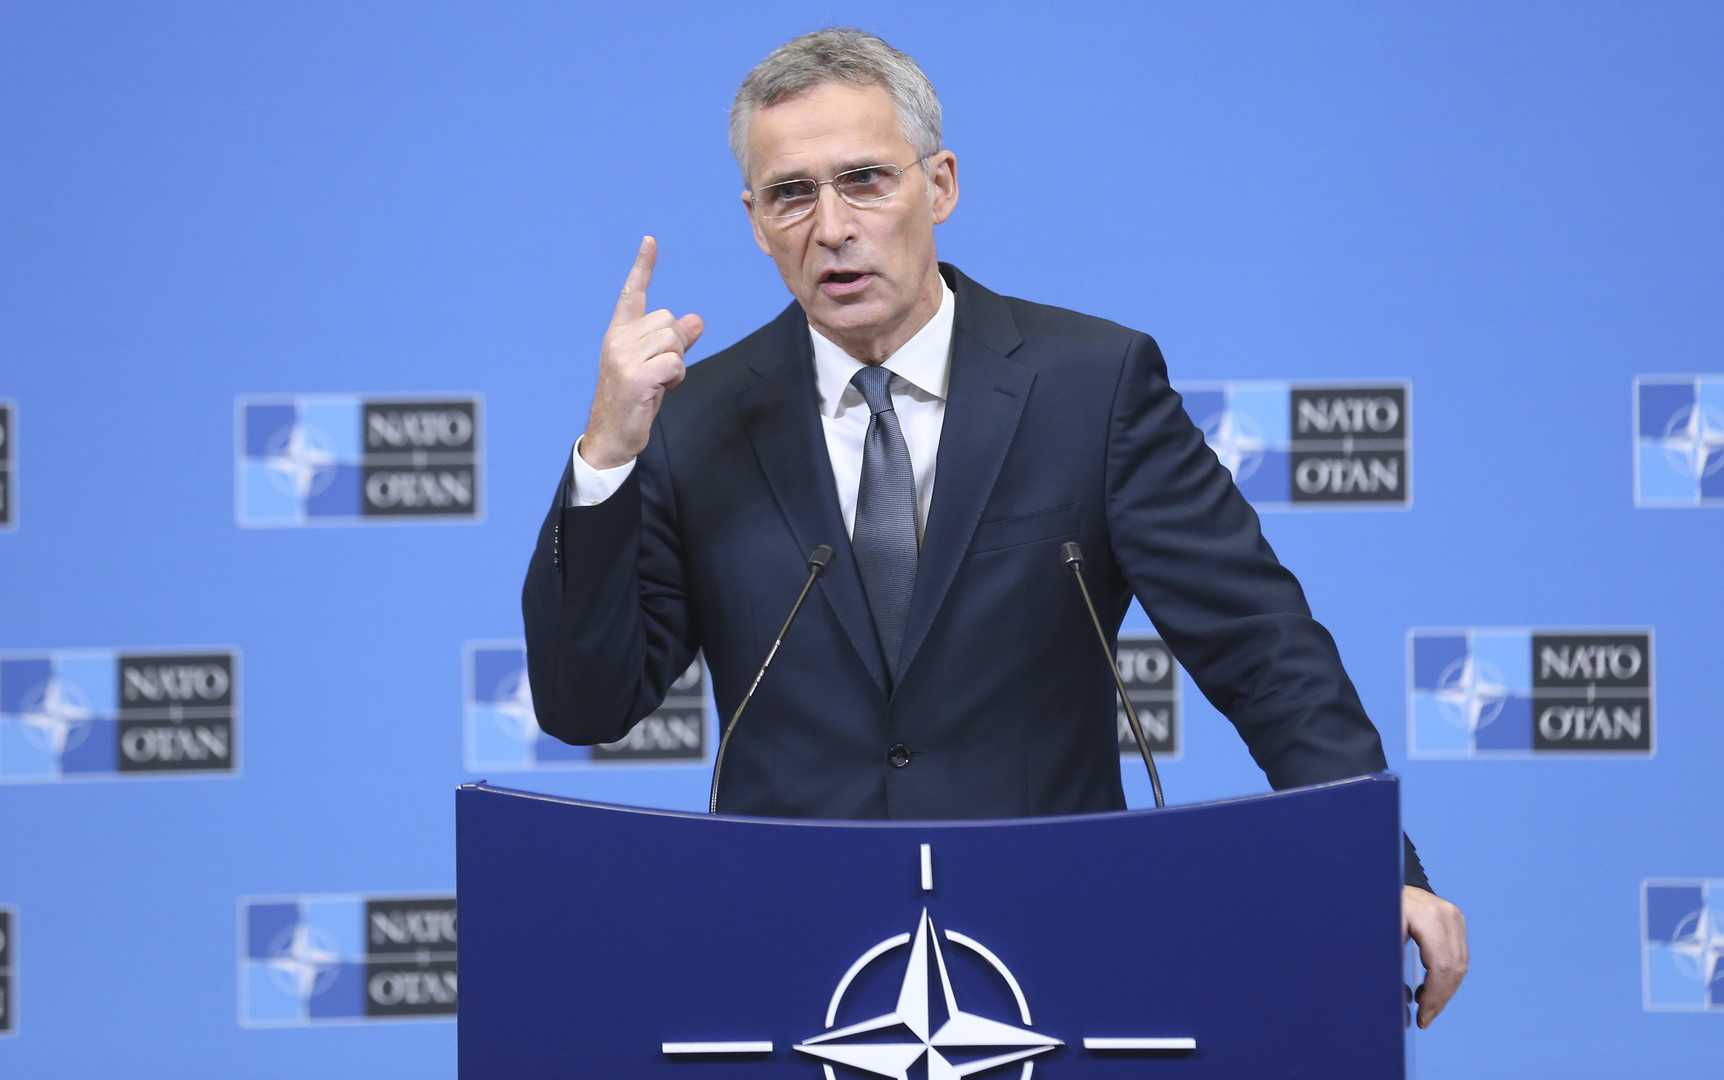 НАТО – не сторона конфликта на Украине, но она продолжит поддерживать Киев